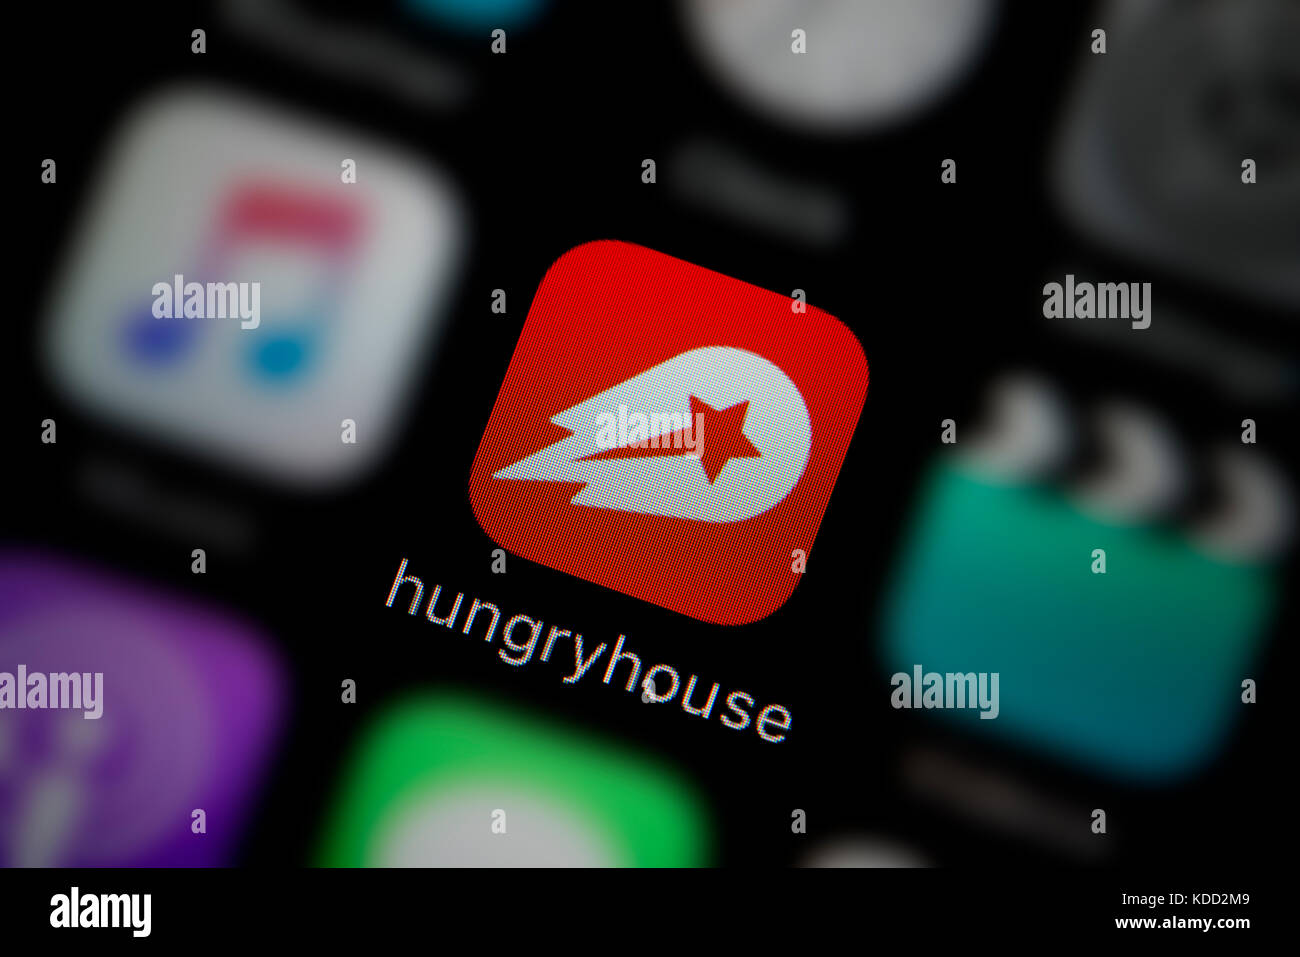 Una inquadratura ravvicinata del logo che rappresenta Hungryhouse Icona app, come si vede sullo schermo di un telefono intelligente (solo uso editoriale) Foto Stock